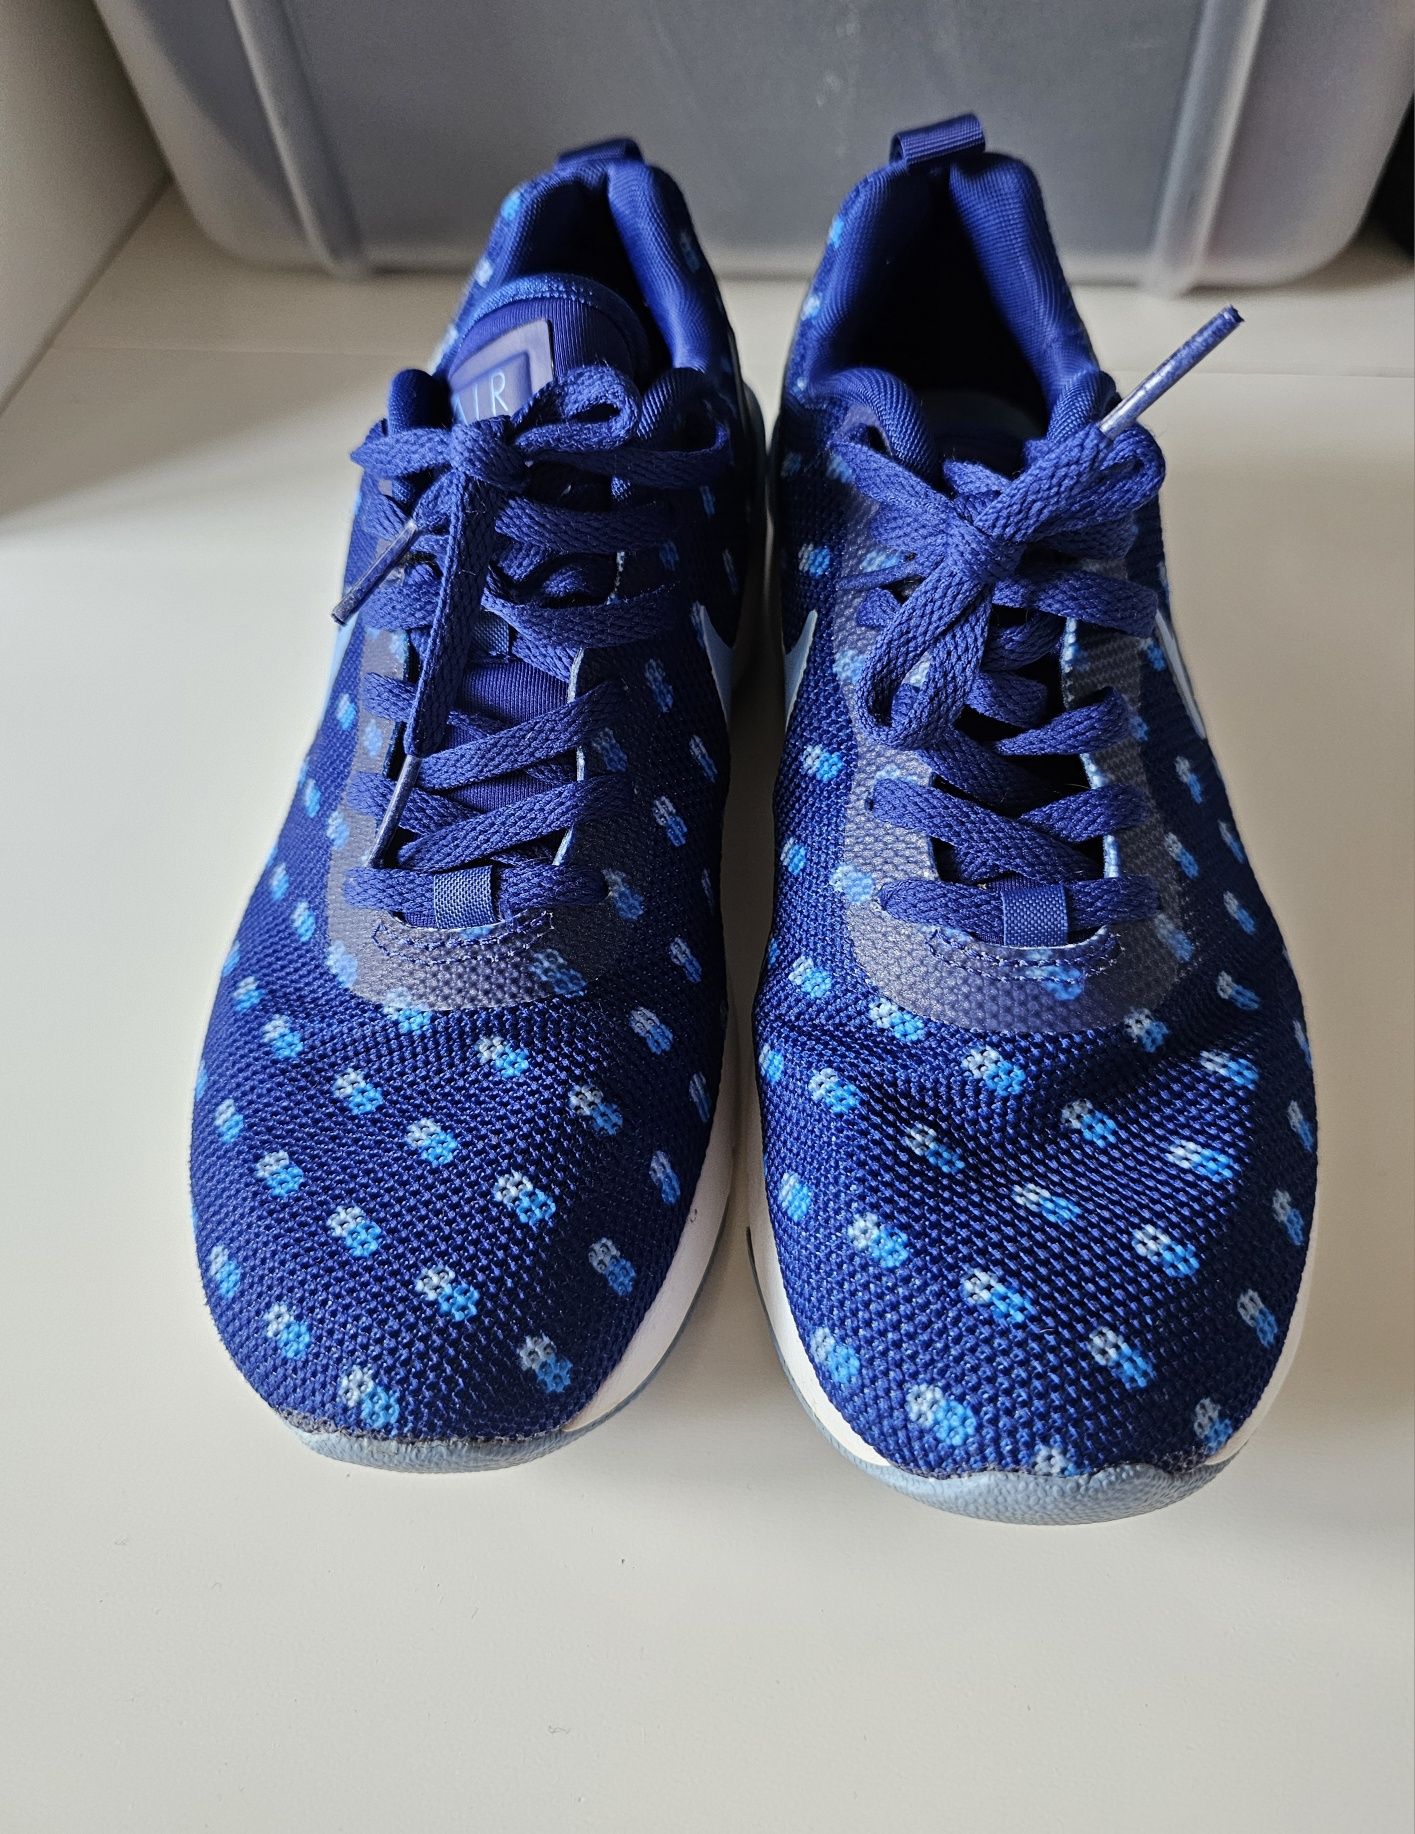 Nike Air Max Siren 39 sportowe buty damskie niebieskie granatowe